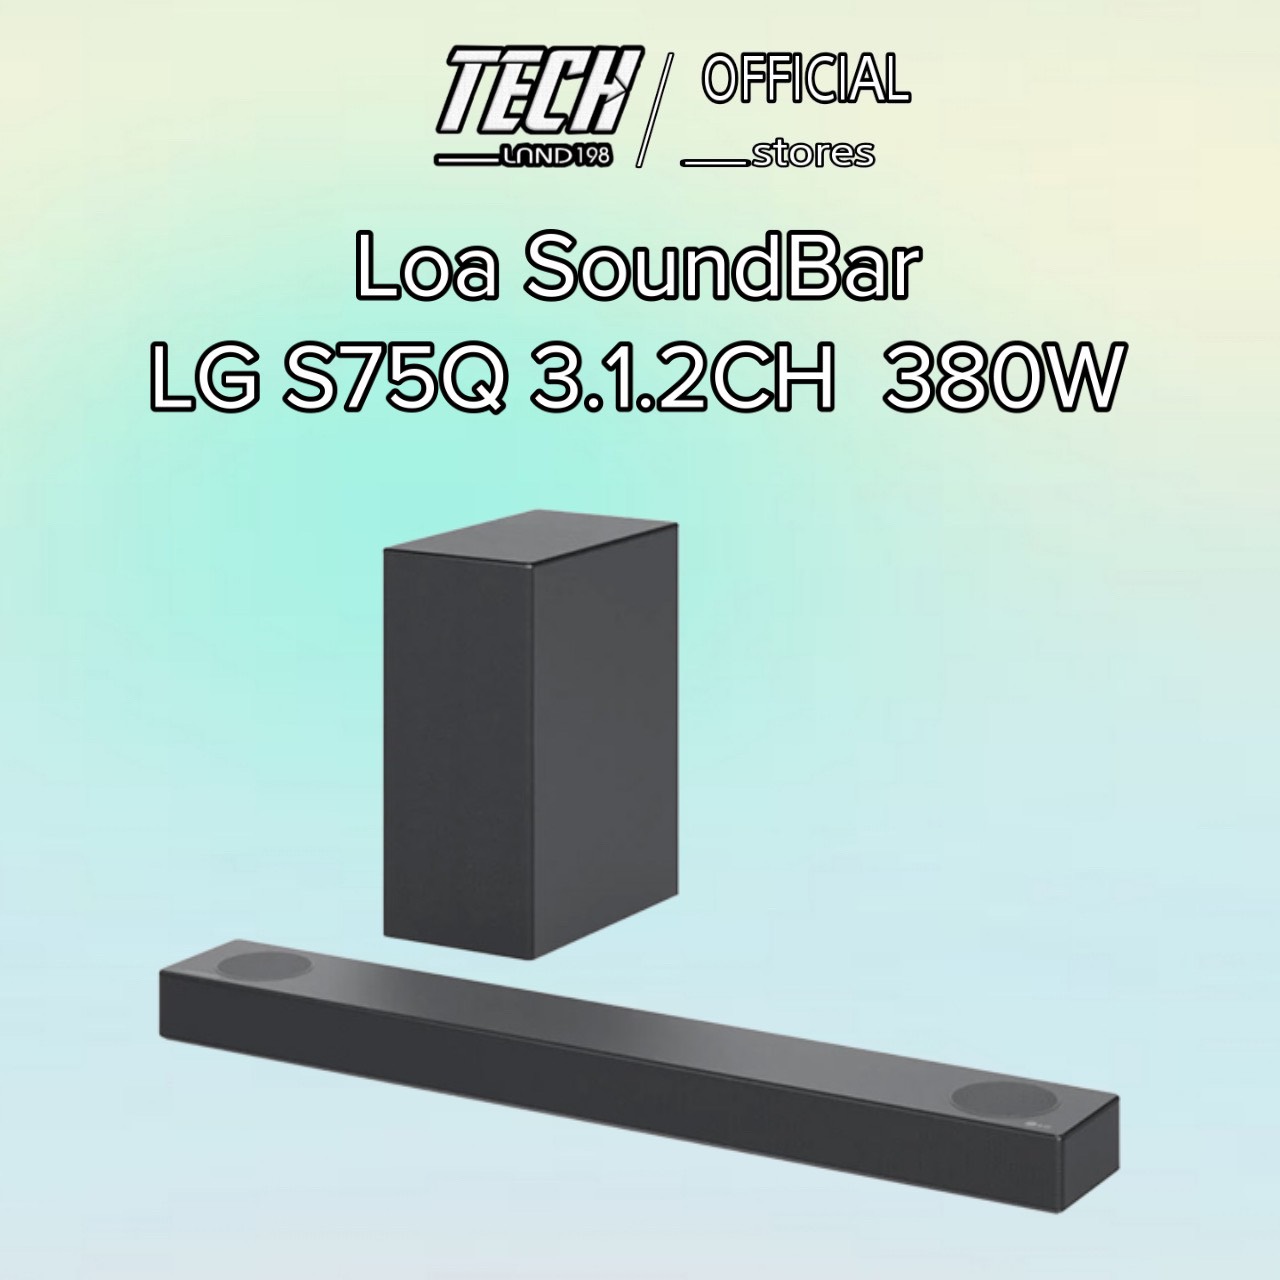 Loa Thanh Soundbar LG S75Q 3.1.2ch 380W Hàng Chính Hãng Bảo Hành 12 Tháng